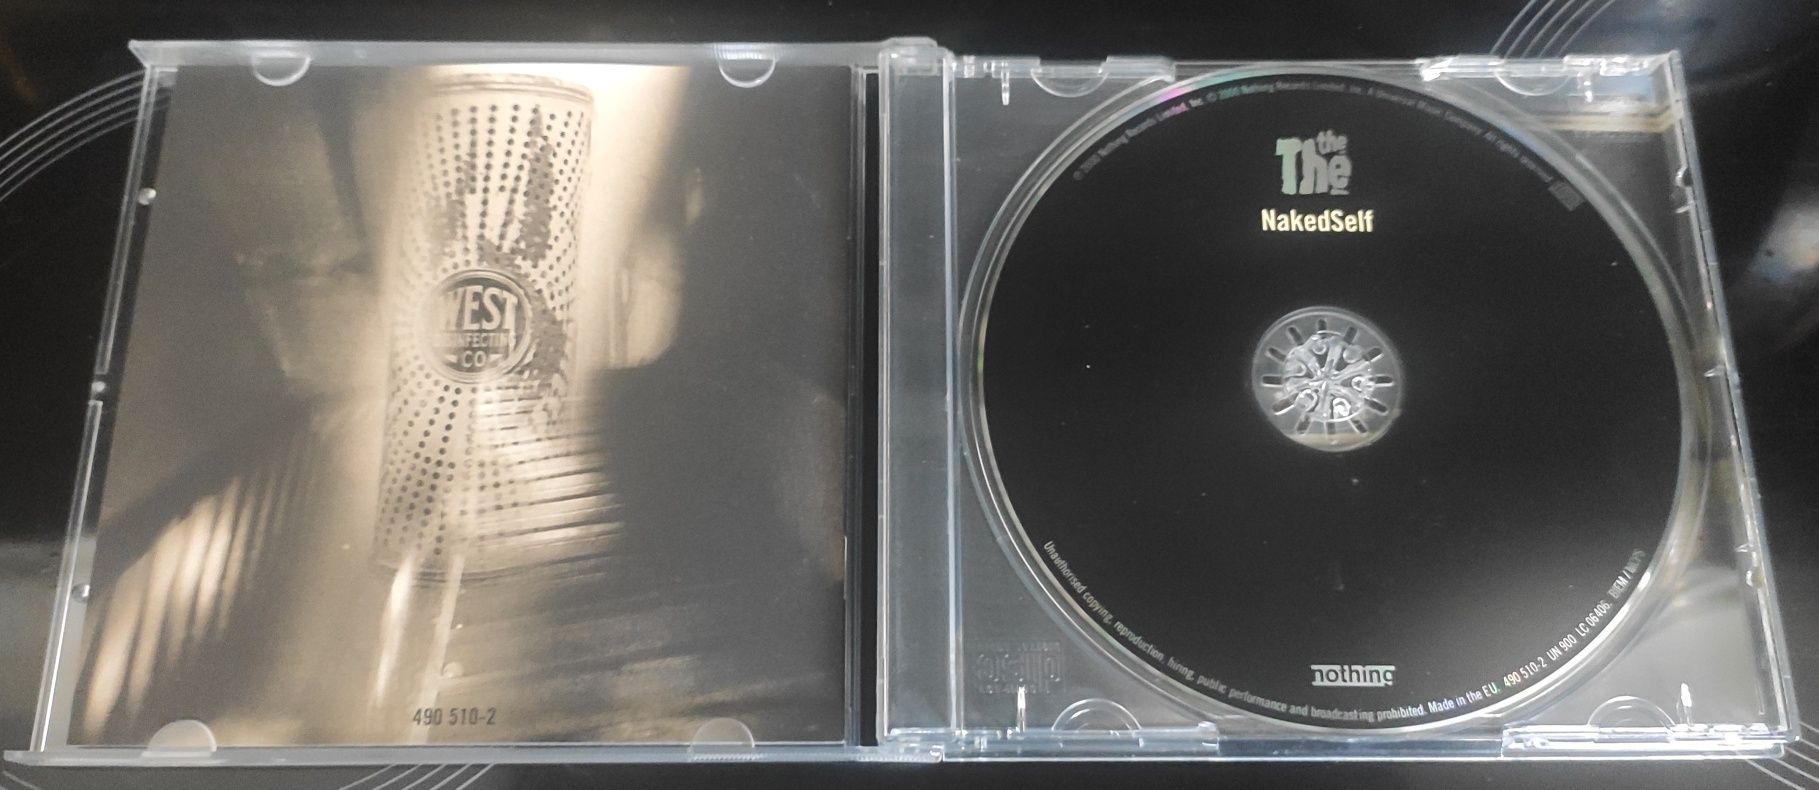 The The "NakedSelf" cd